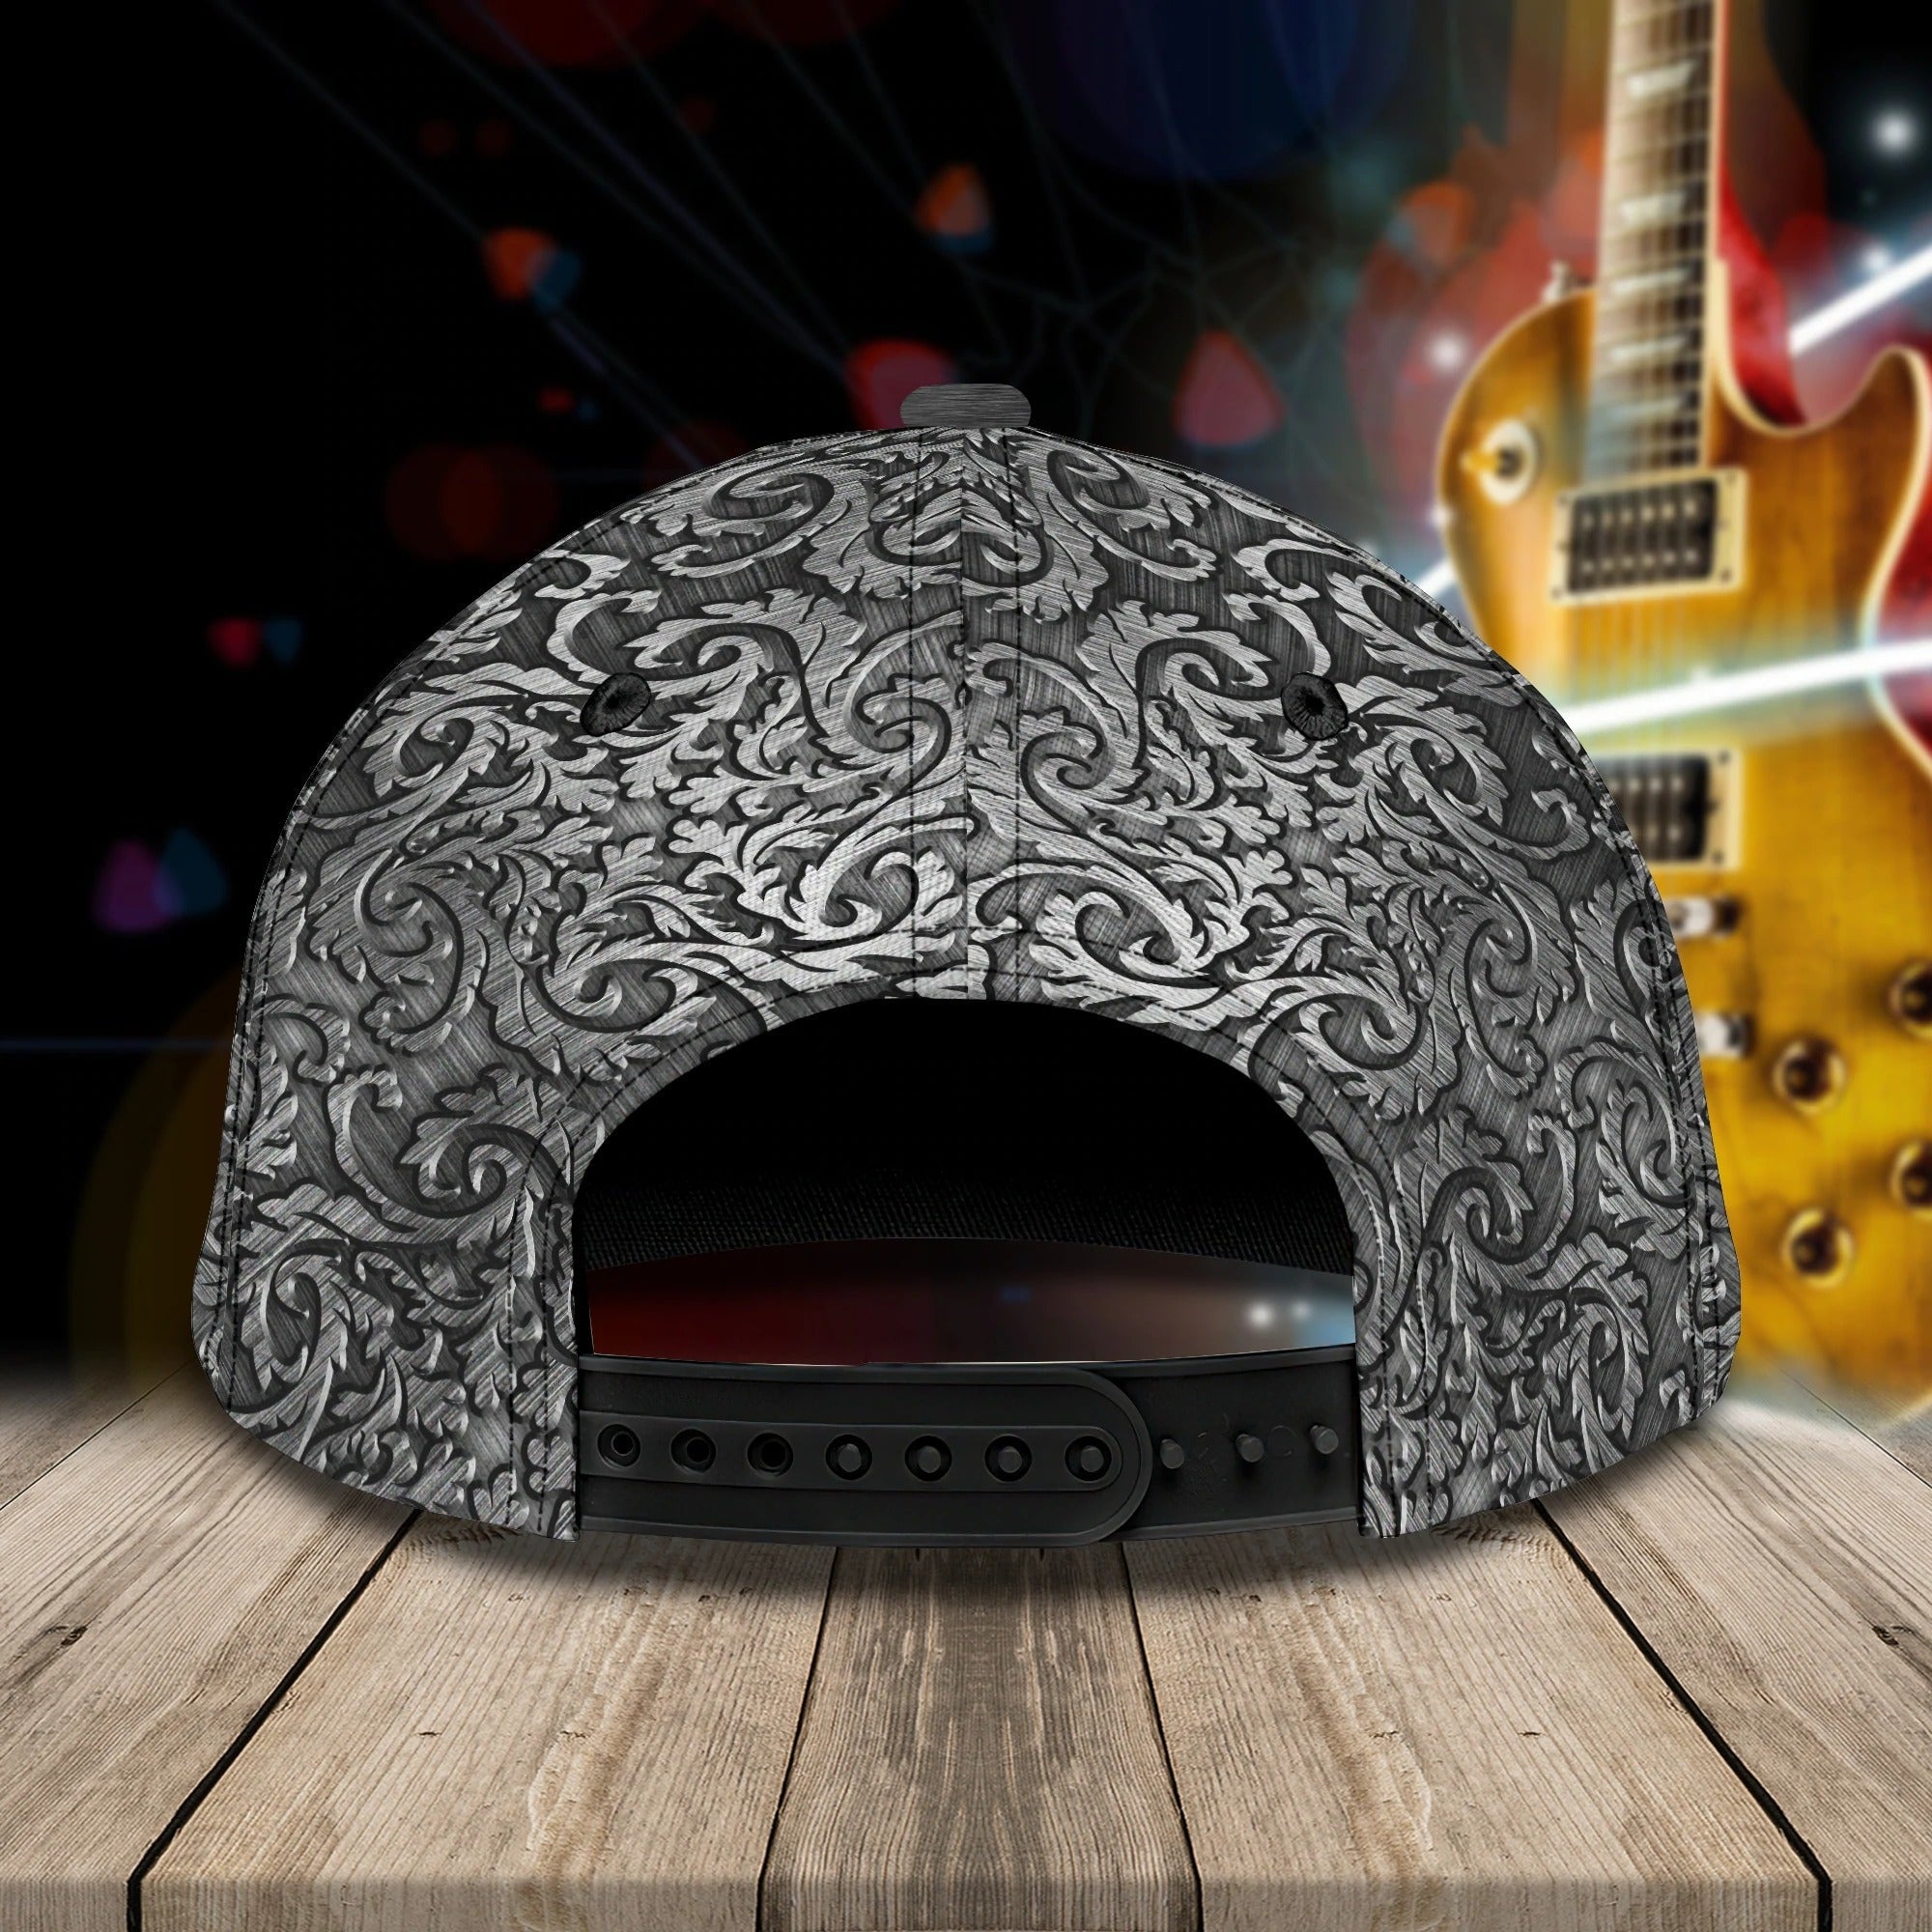 Personalized Classic 3D Guitar Cap/ Love Guitar/ Baseball Cap For Guitar Man/ Gift For Guitar Lover